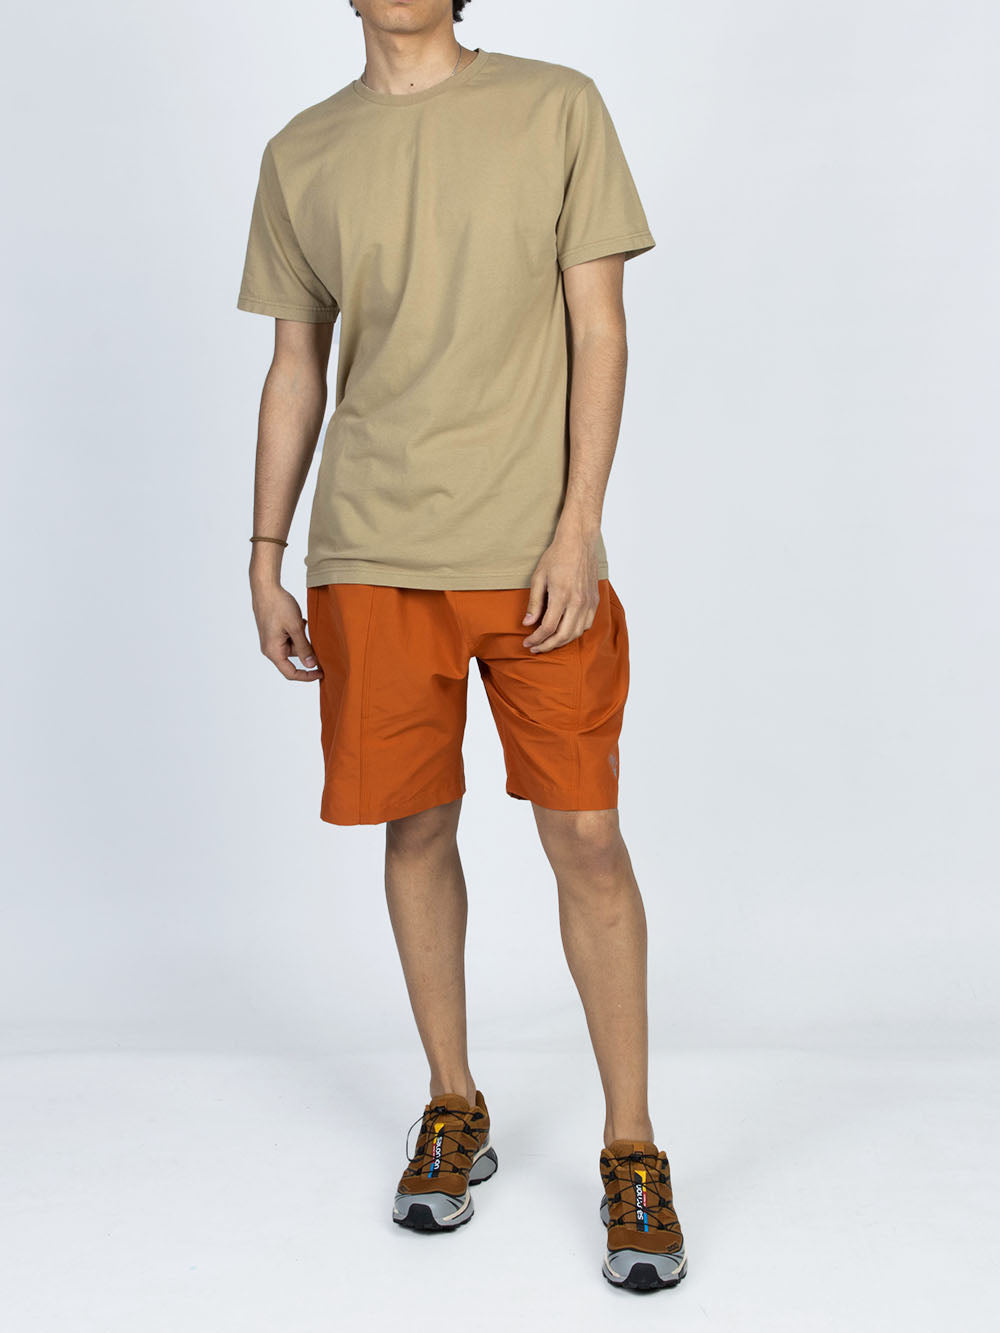 COLORFUL STANDARD T-shirt in cotone organico beige Beige arancio Urbanstaroma